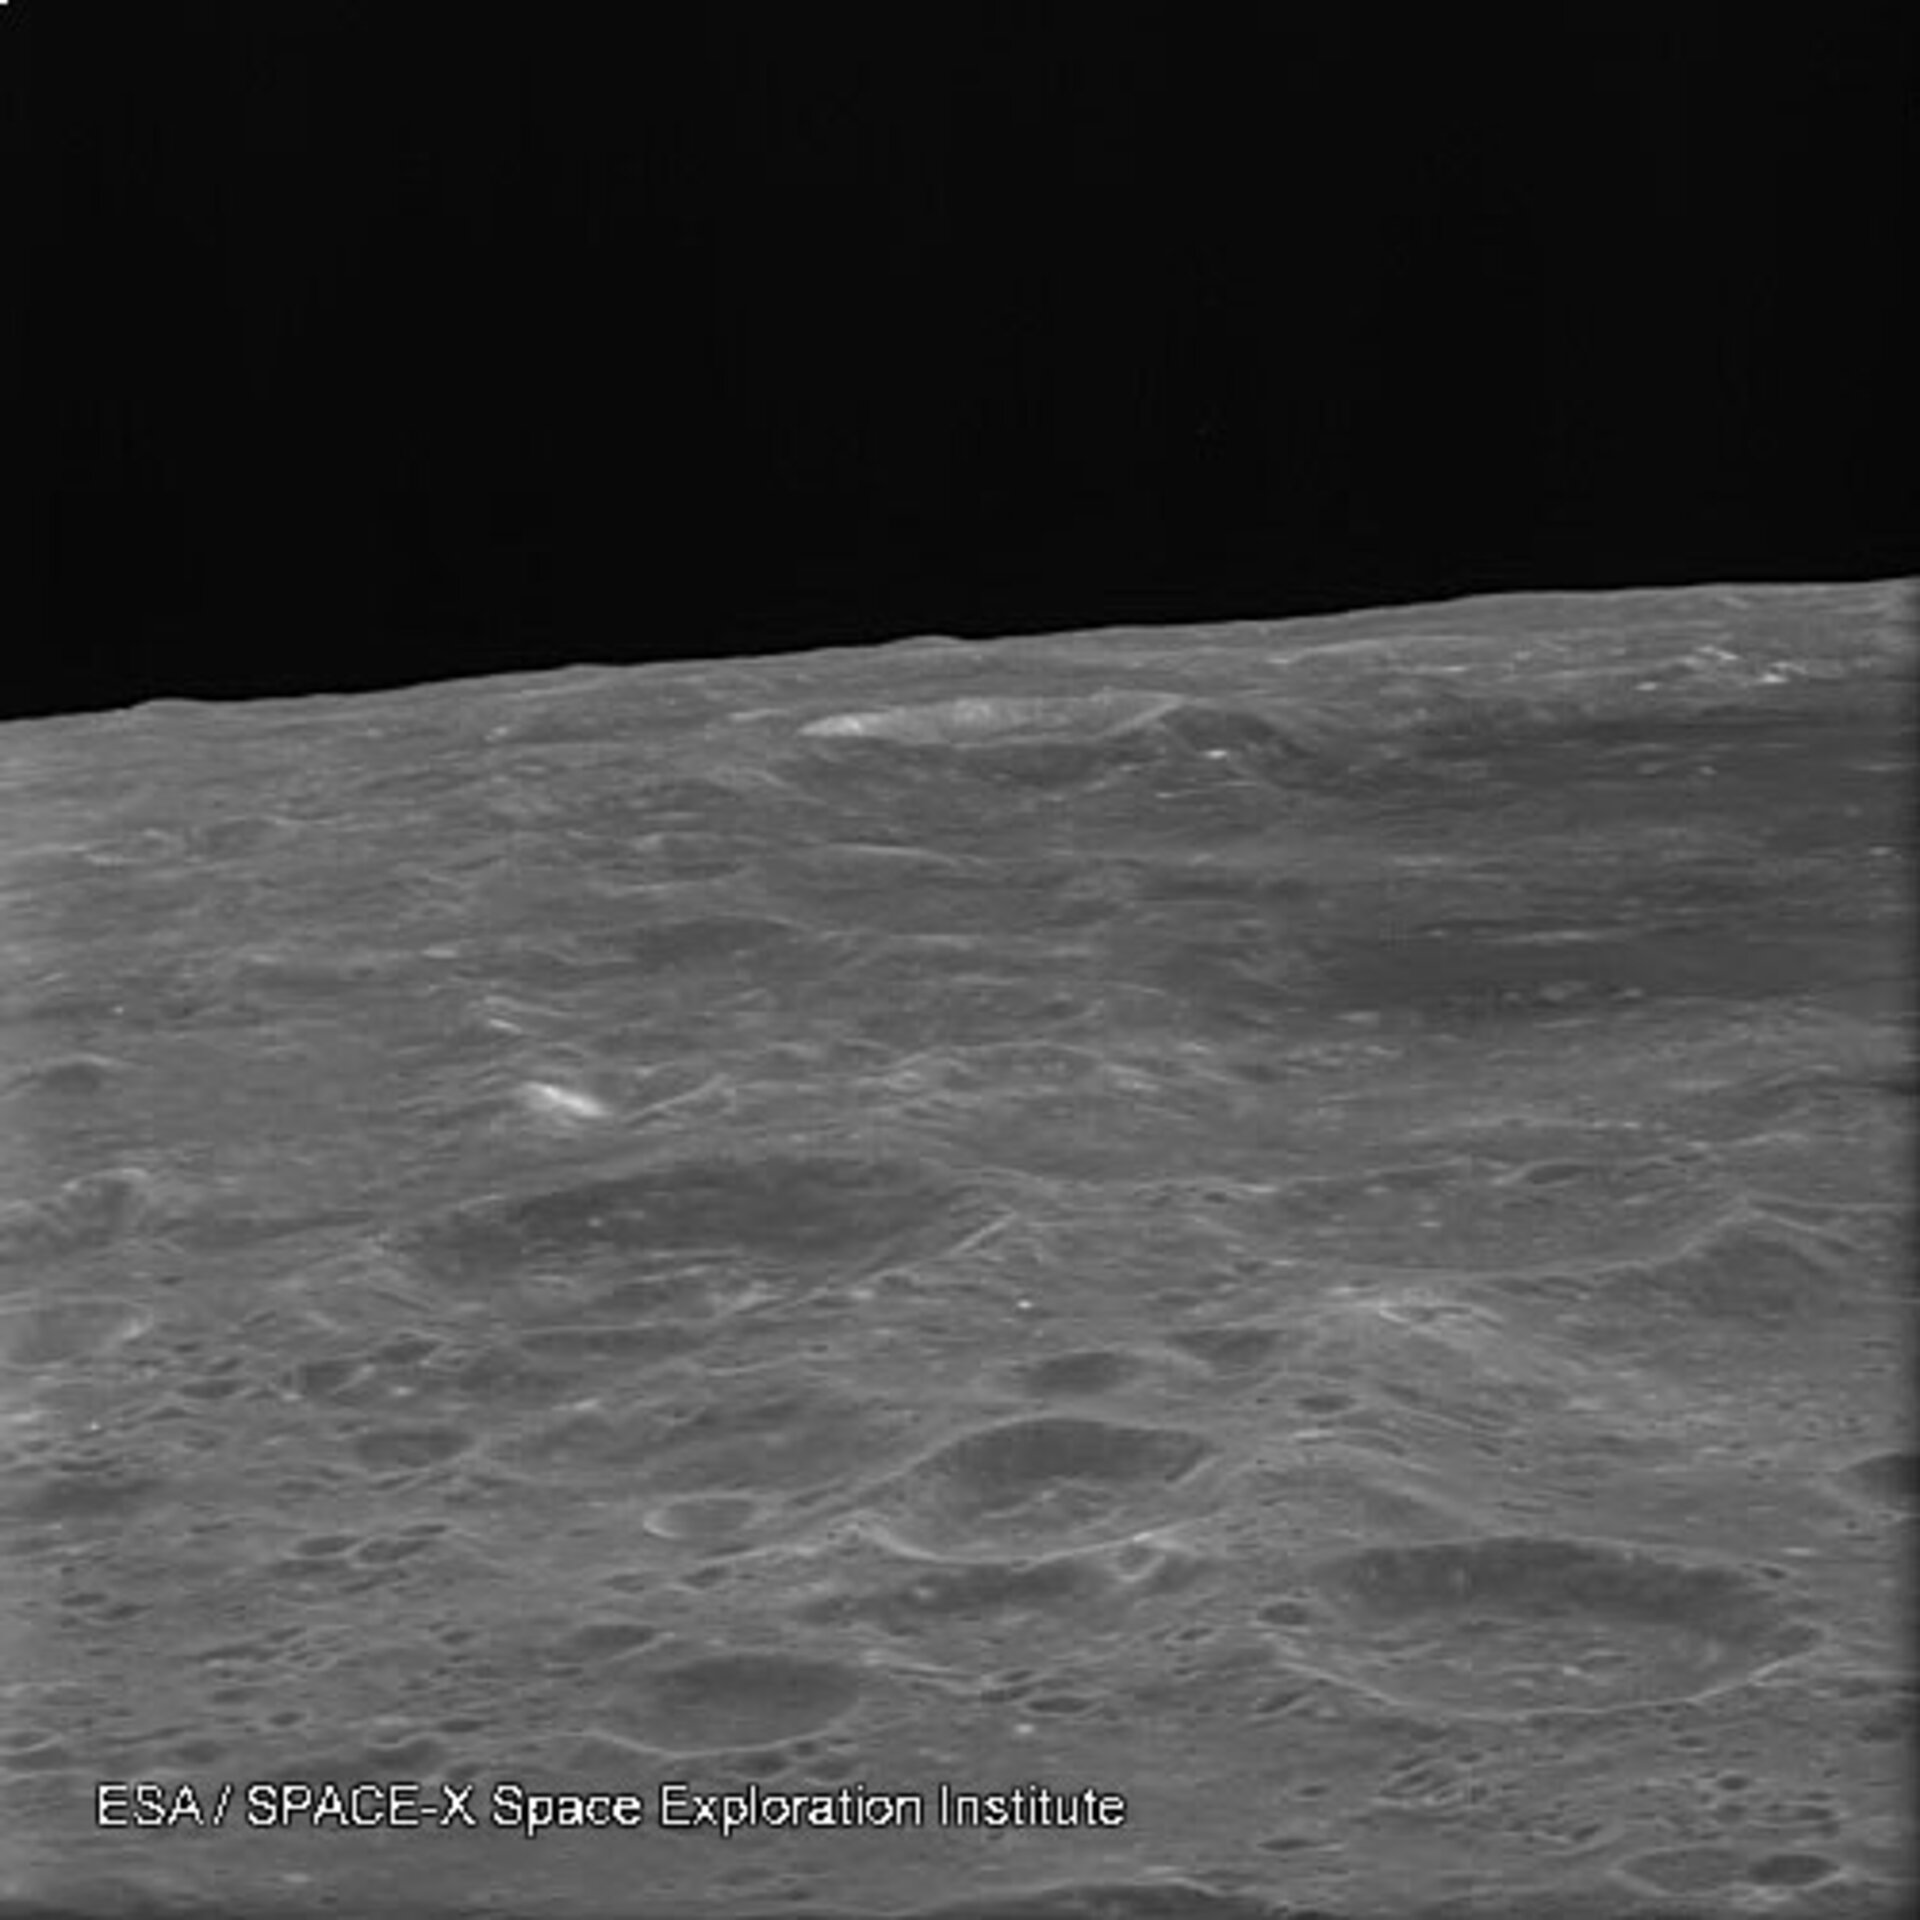 La camera AMIE di SMART-1 ha raccolto una serie di immagini dell’orizzonte lunare illuminato